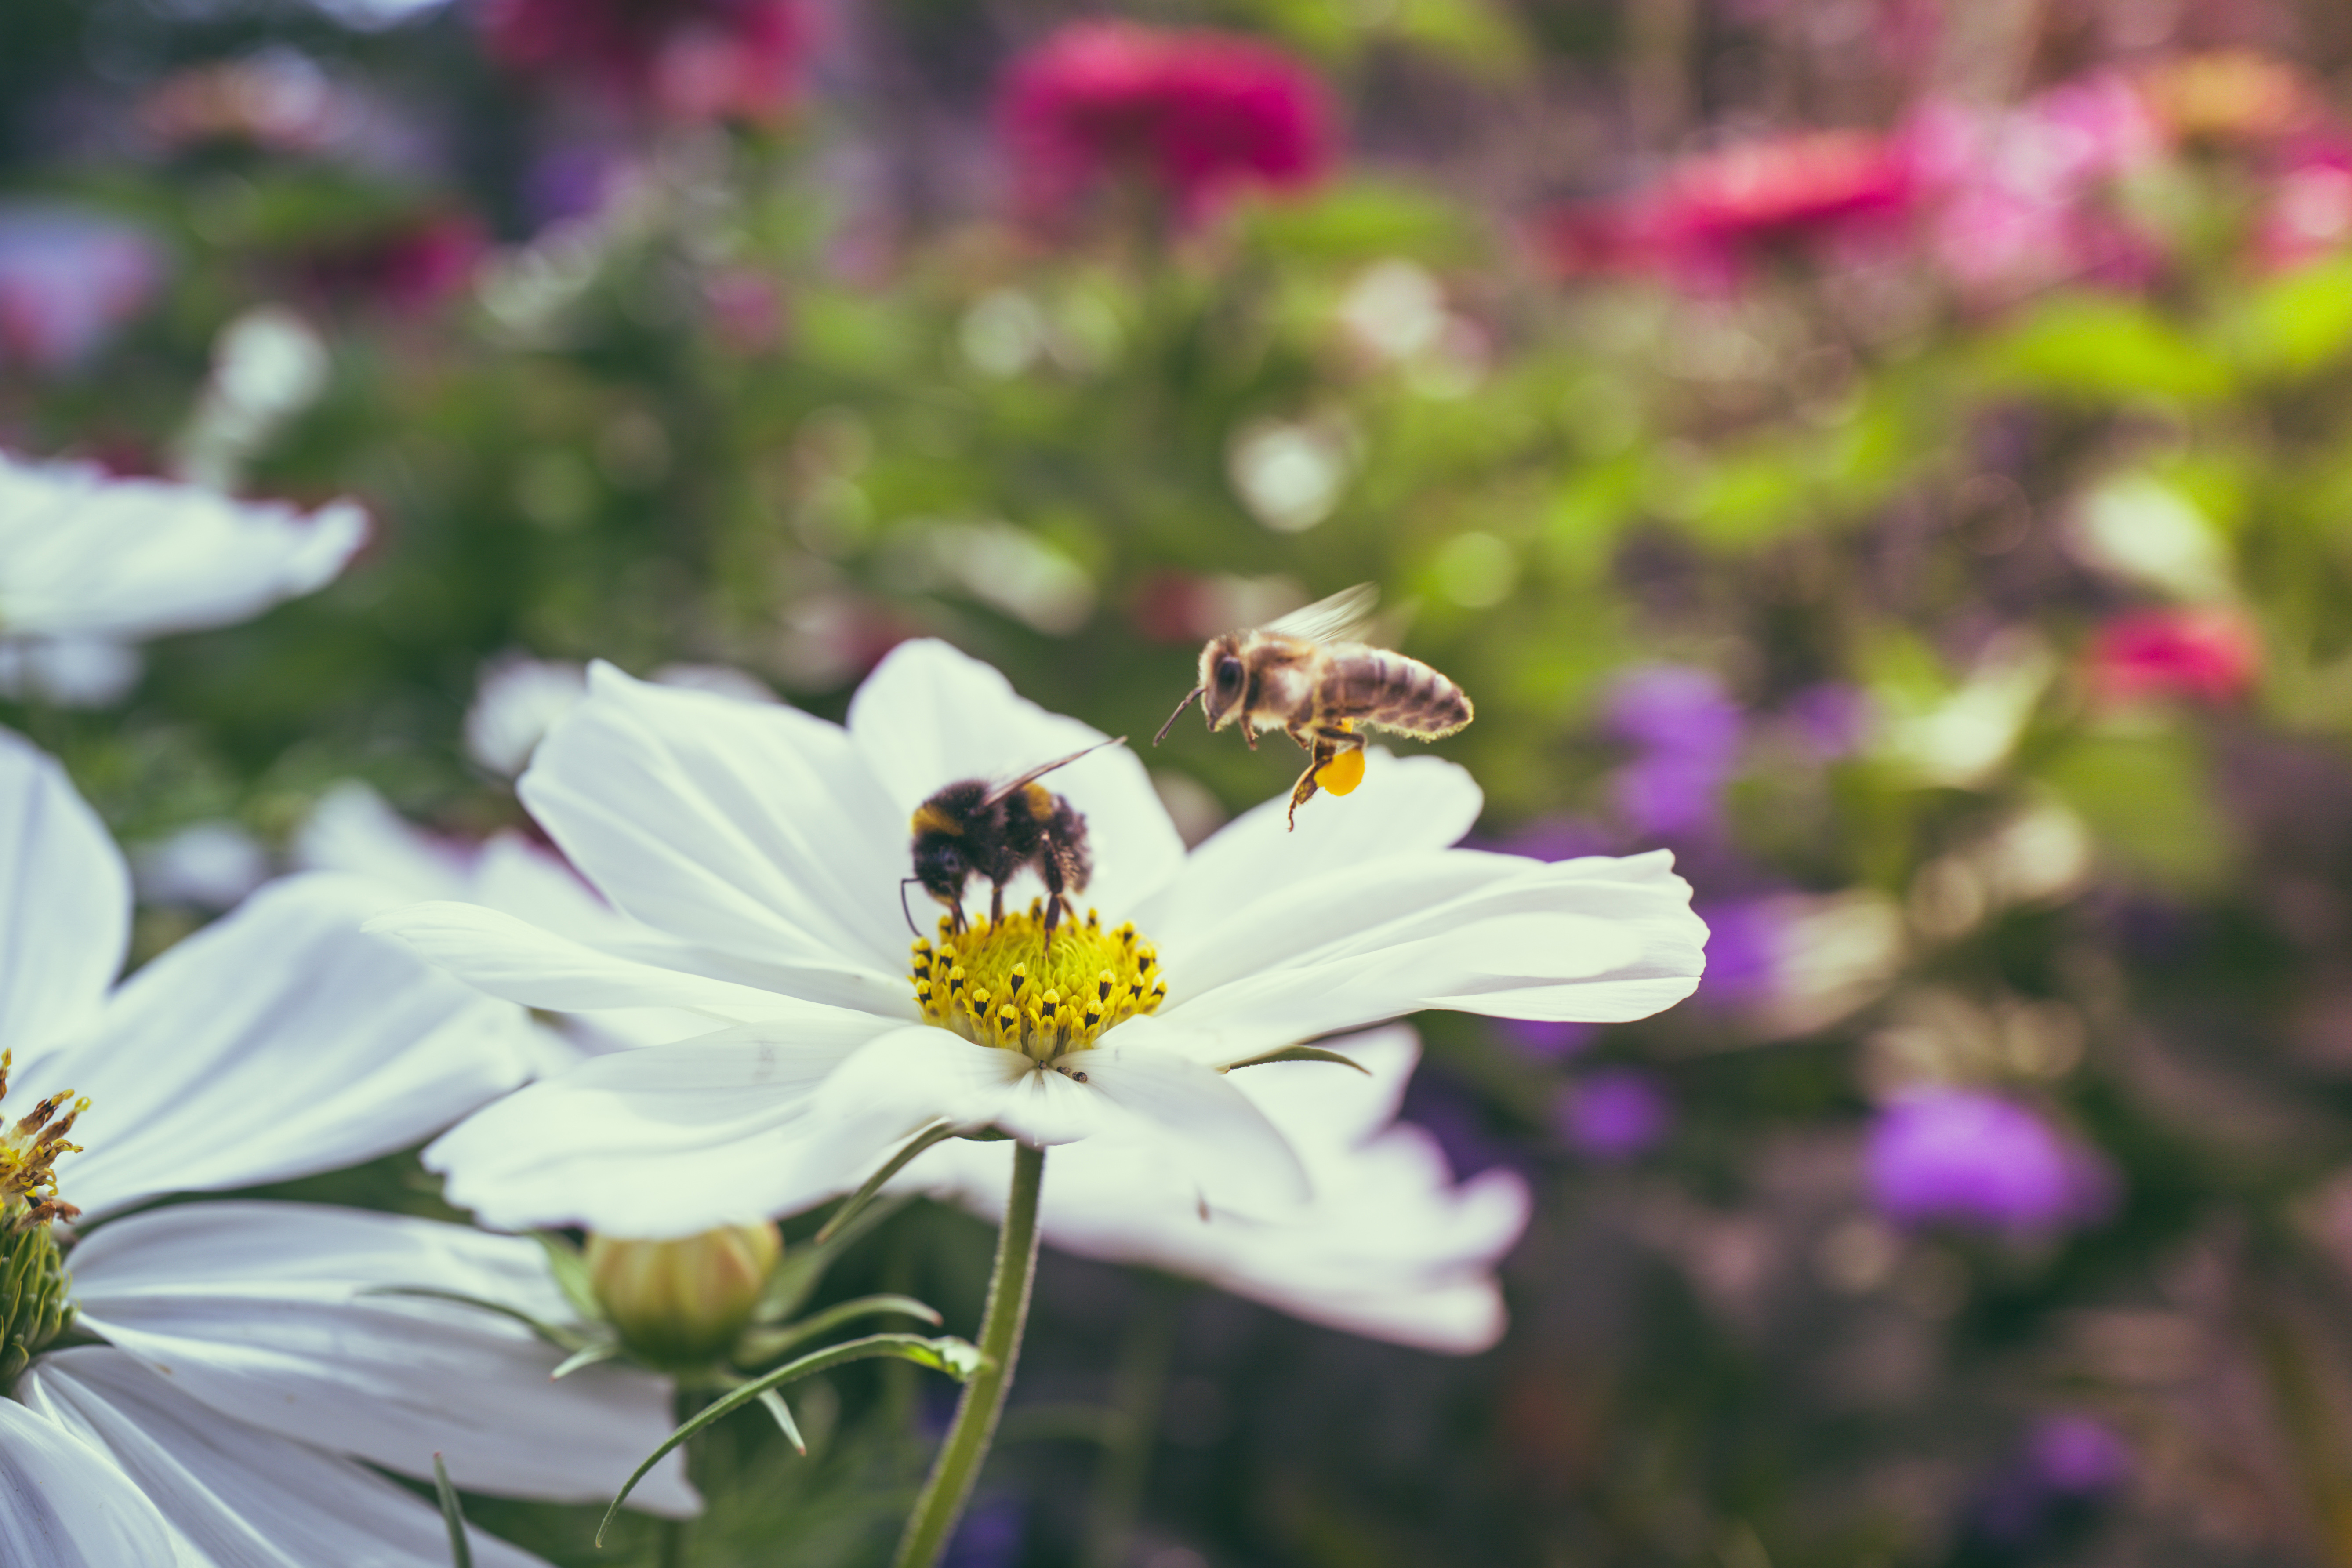 Das Bild zeigt eine Biene und eine Hummel, die Hummel trinkt von dem Nektar der gelben Blüte, die Biene fliegt gerade daran vorbei. Die Blume hat weiße Blätter. Im Hintergrund sind weitere Blumen und grüne Pflanzen zu sehen, die eine ästhetisch ansprechende Bokeh-Effekt erzeugen. Das natürliche und weiße Licht betont die Details der Insekten und der Blume im Vordergrund.